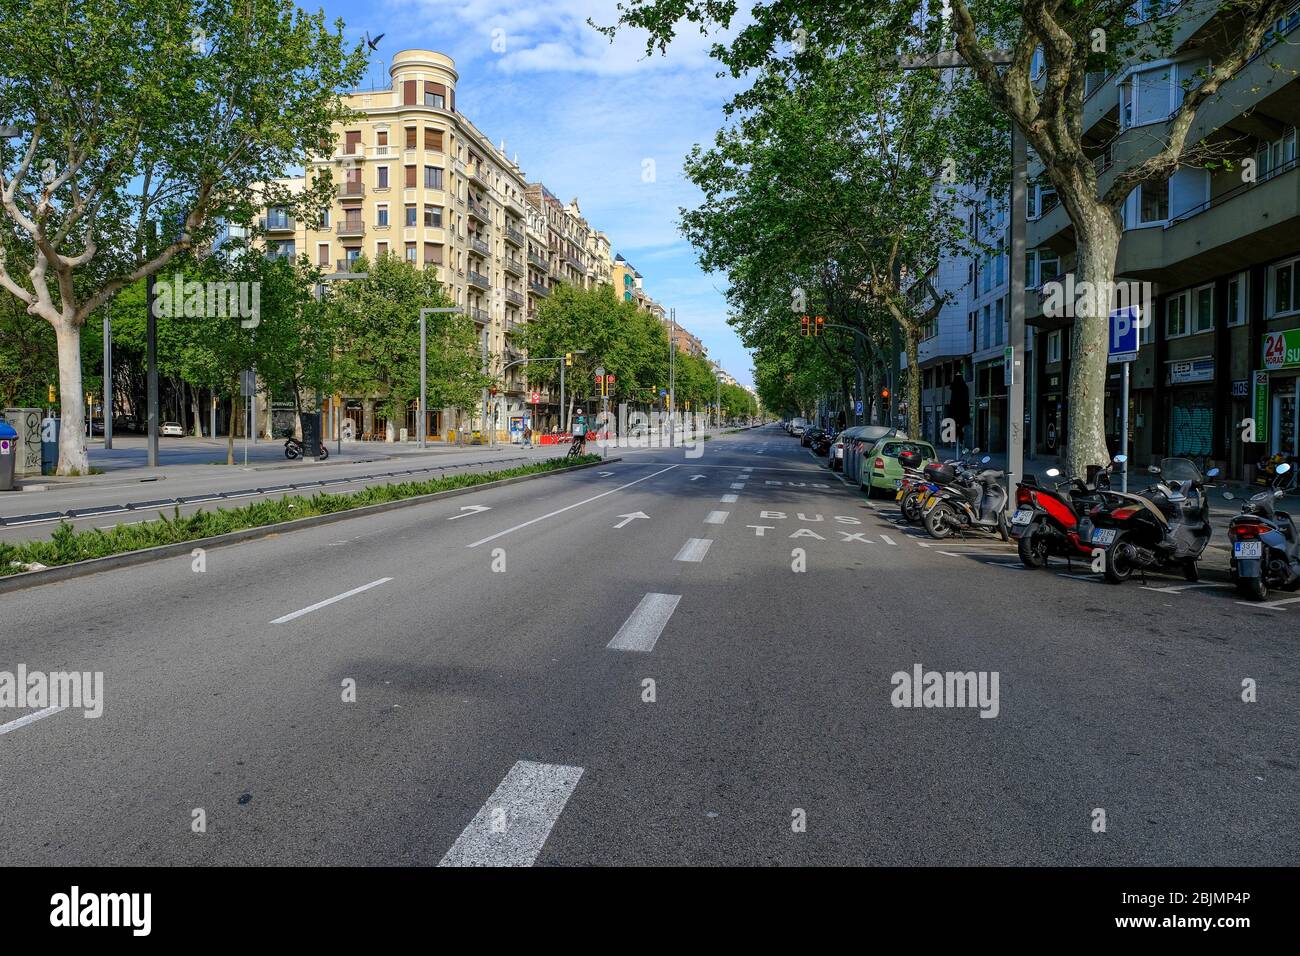 Die Pararlel Avenue ist wegen der totalen Einengung der Bevölkerung in Spanien geöffnet. Spanien ist eines der am stärksten betroffenen Länder der Covid-19 Stockfoto